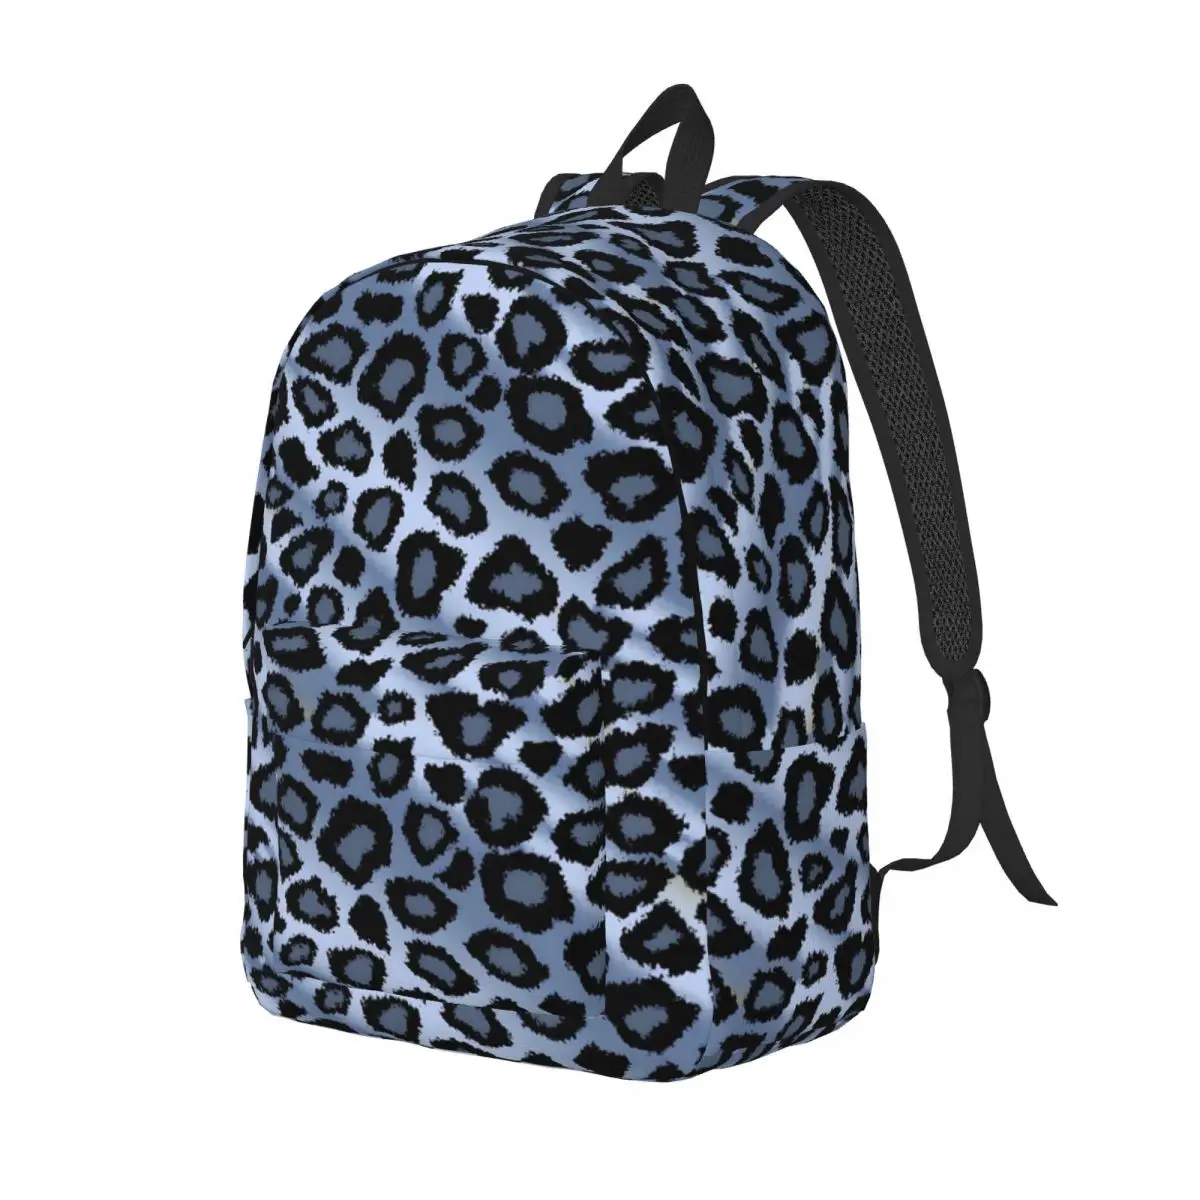 

Рюкзак для подростков с леопардовым принтом животного, большие повседневные дизайнерские дорожные сумки из полиэстера, школьные портфели